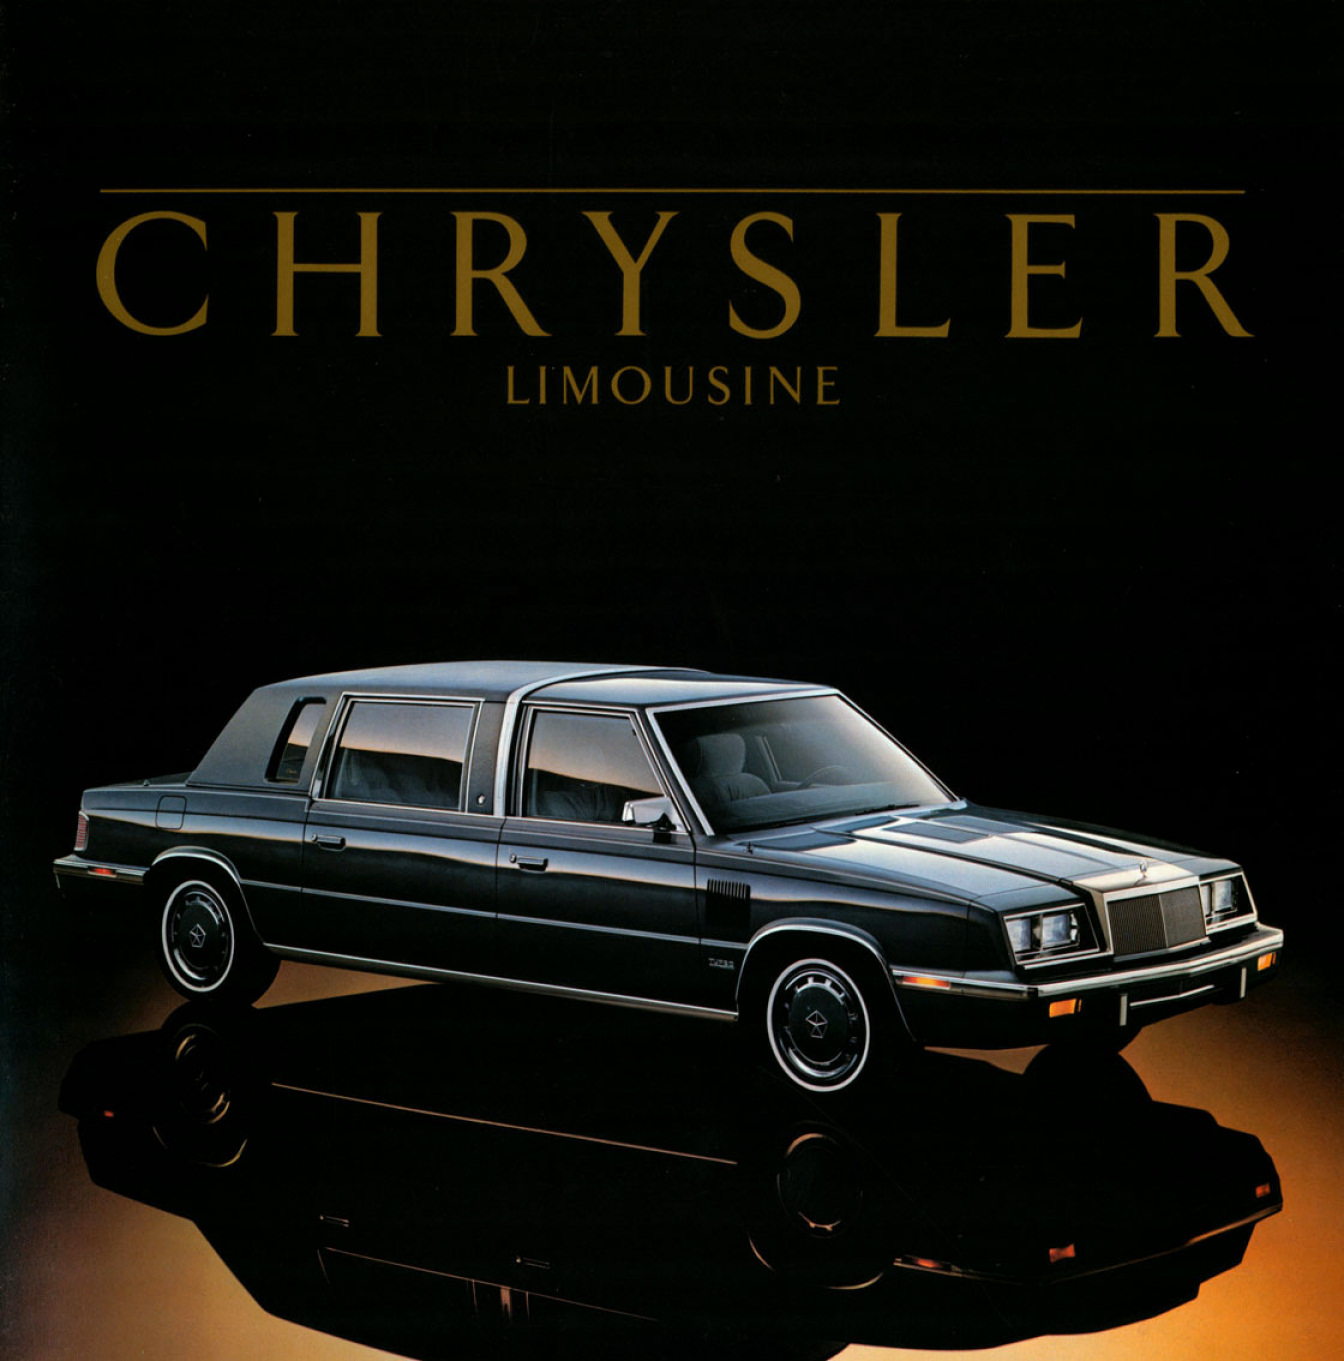 1986 Chrysler Limousine-01